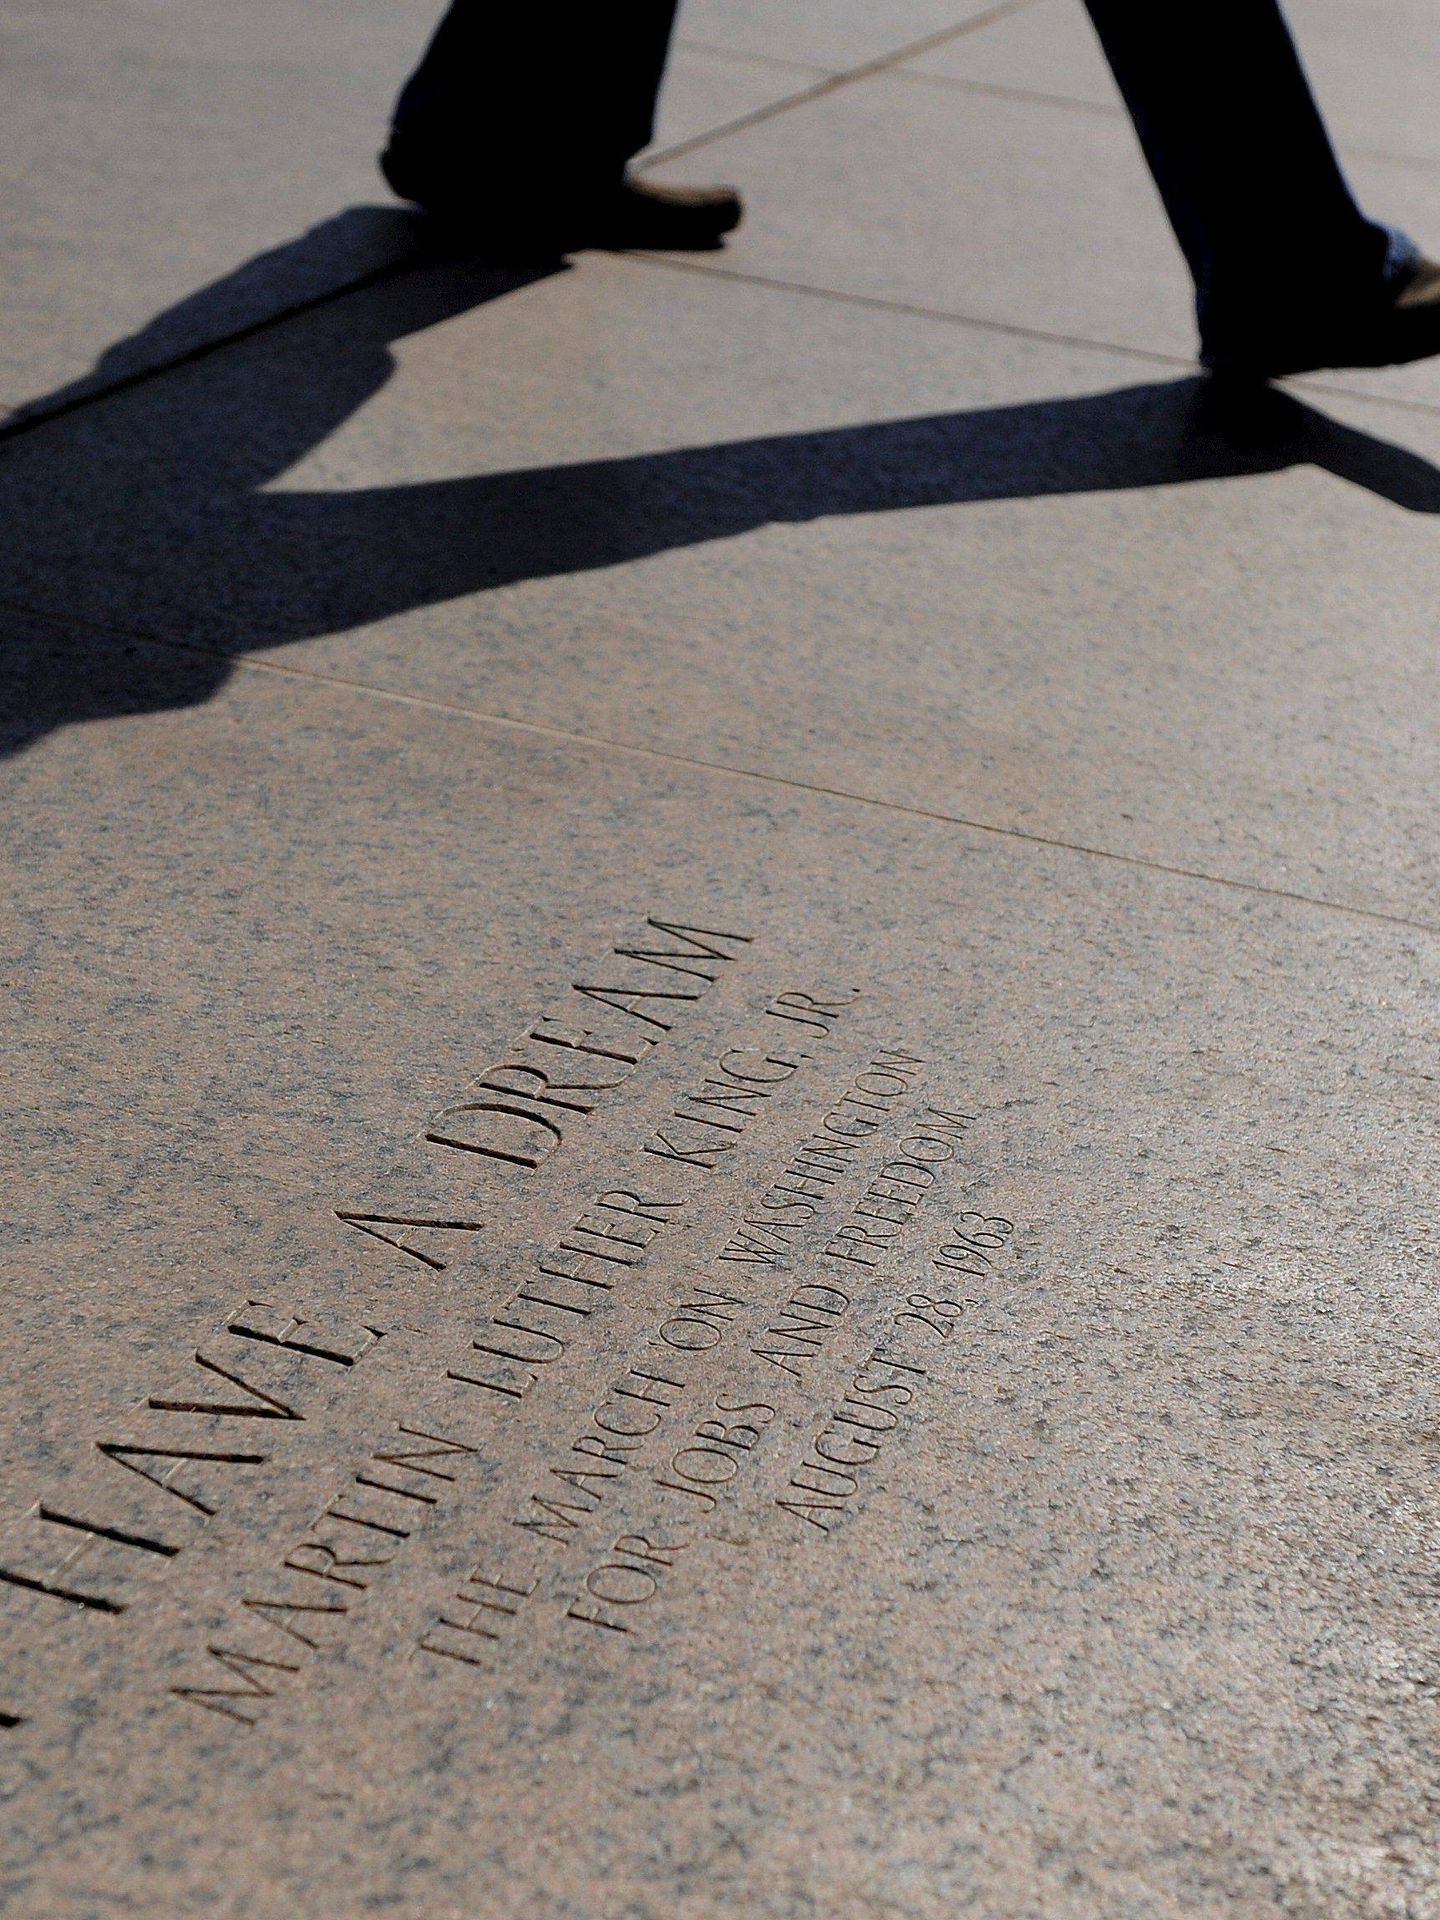 Un viandante pasa junto al lugar donde Martin Luther King Jr. pronunció su famoso discurso. (EFE)